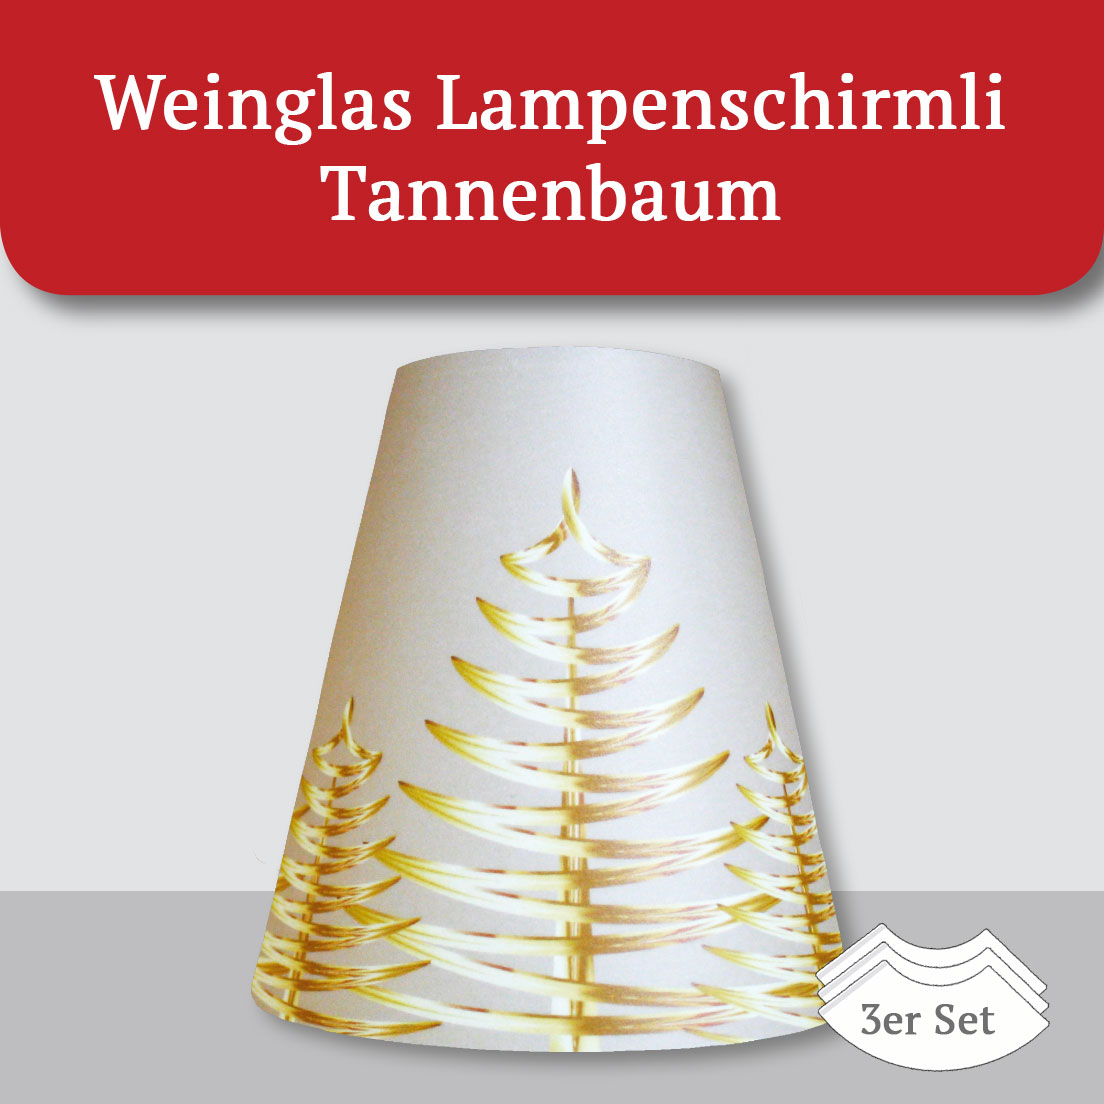 Weinglas Lampenschirmli Tannenbaum